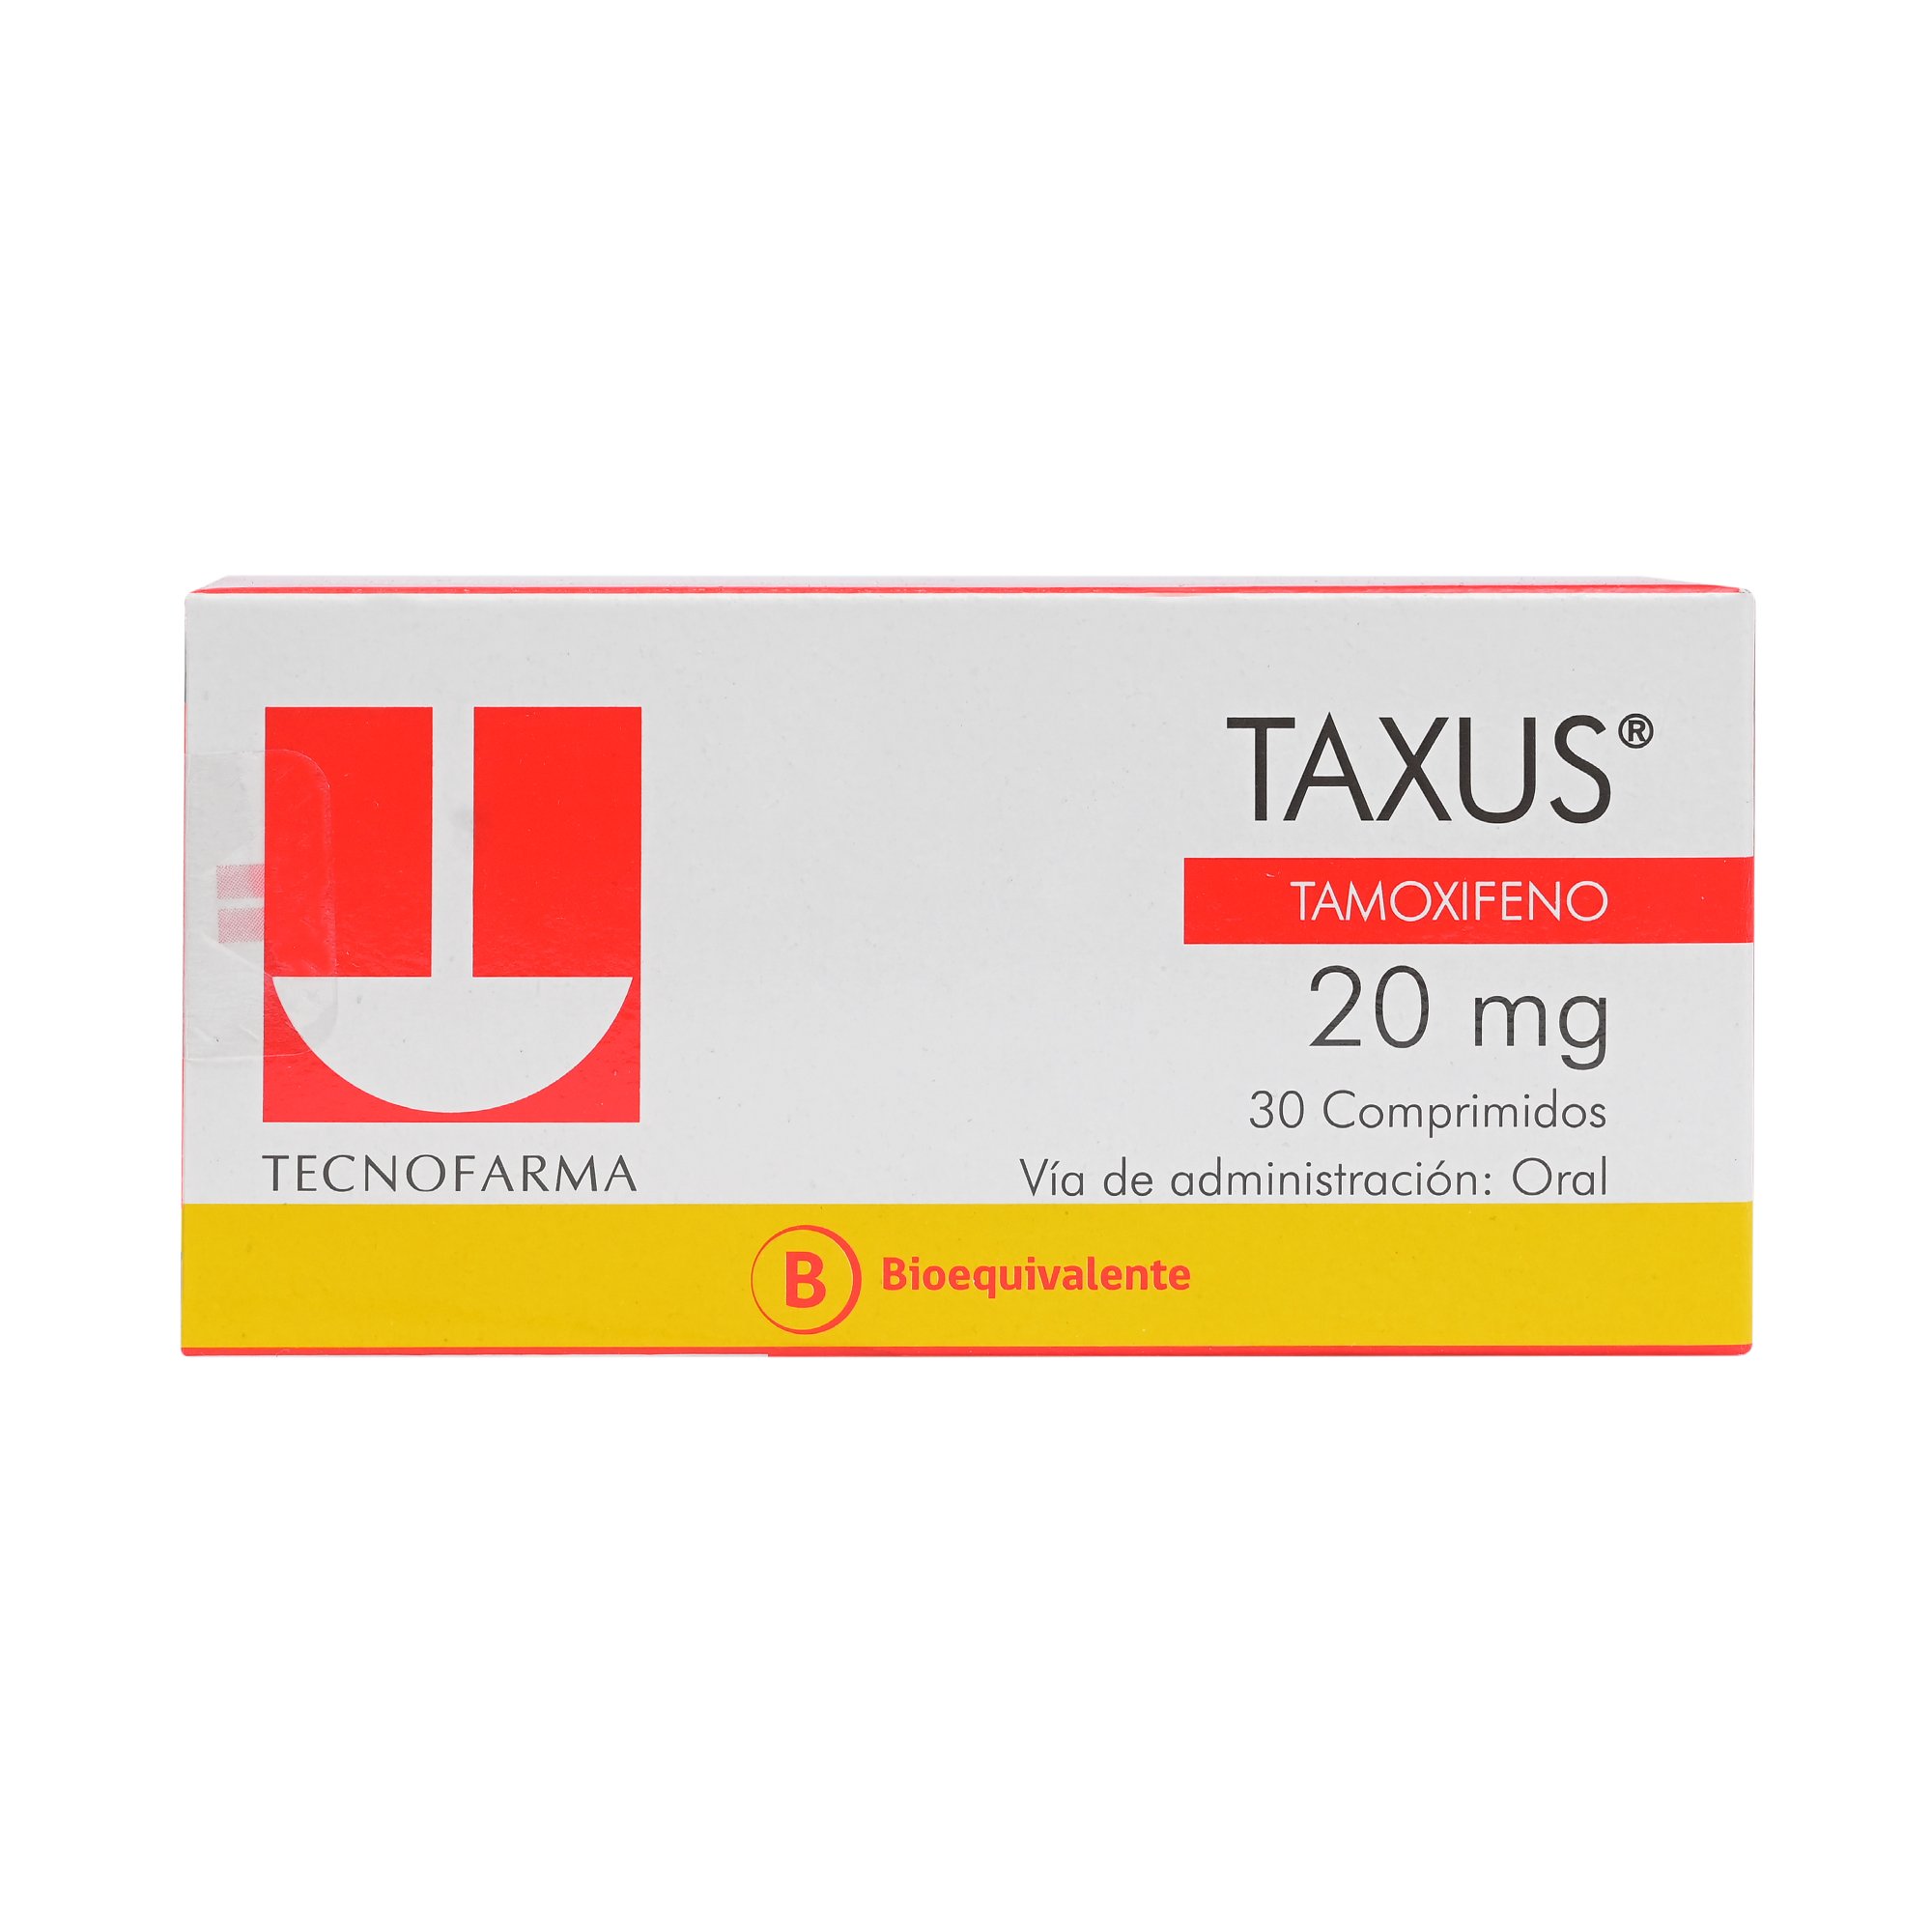 Taxus Tamoxifeno 20 mg 30 Comprimidos | Farmacias Cruz Verde